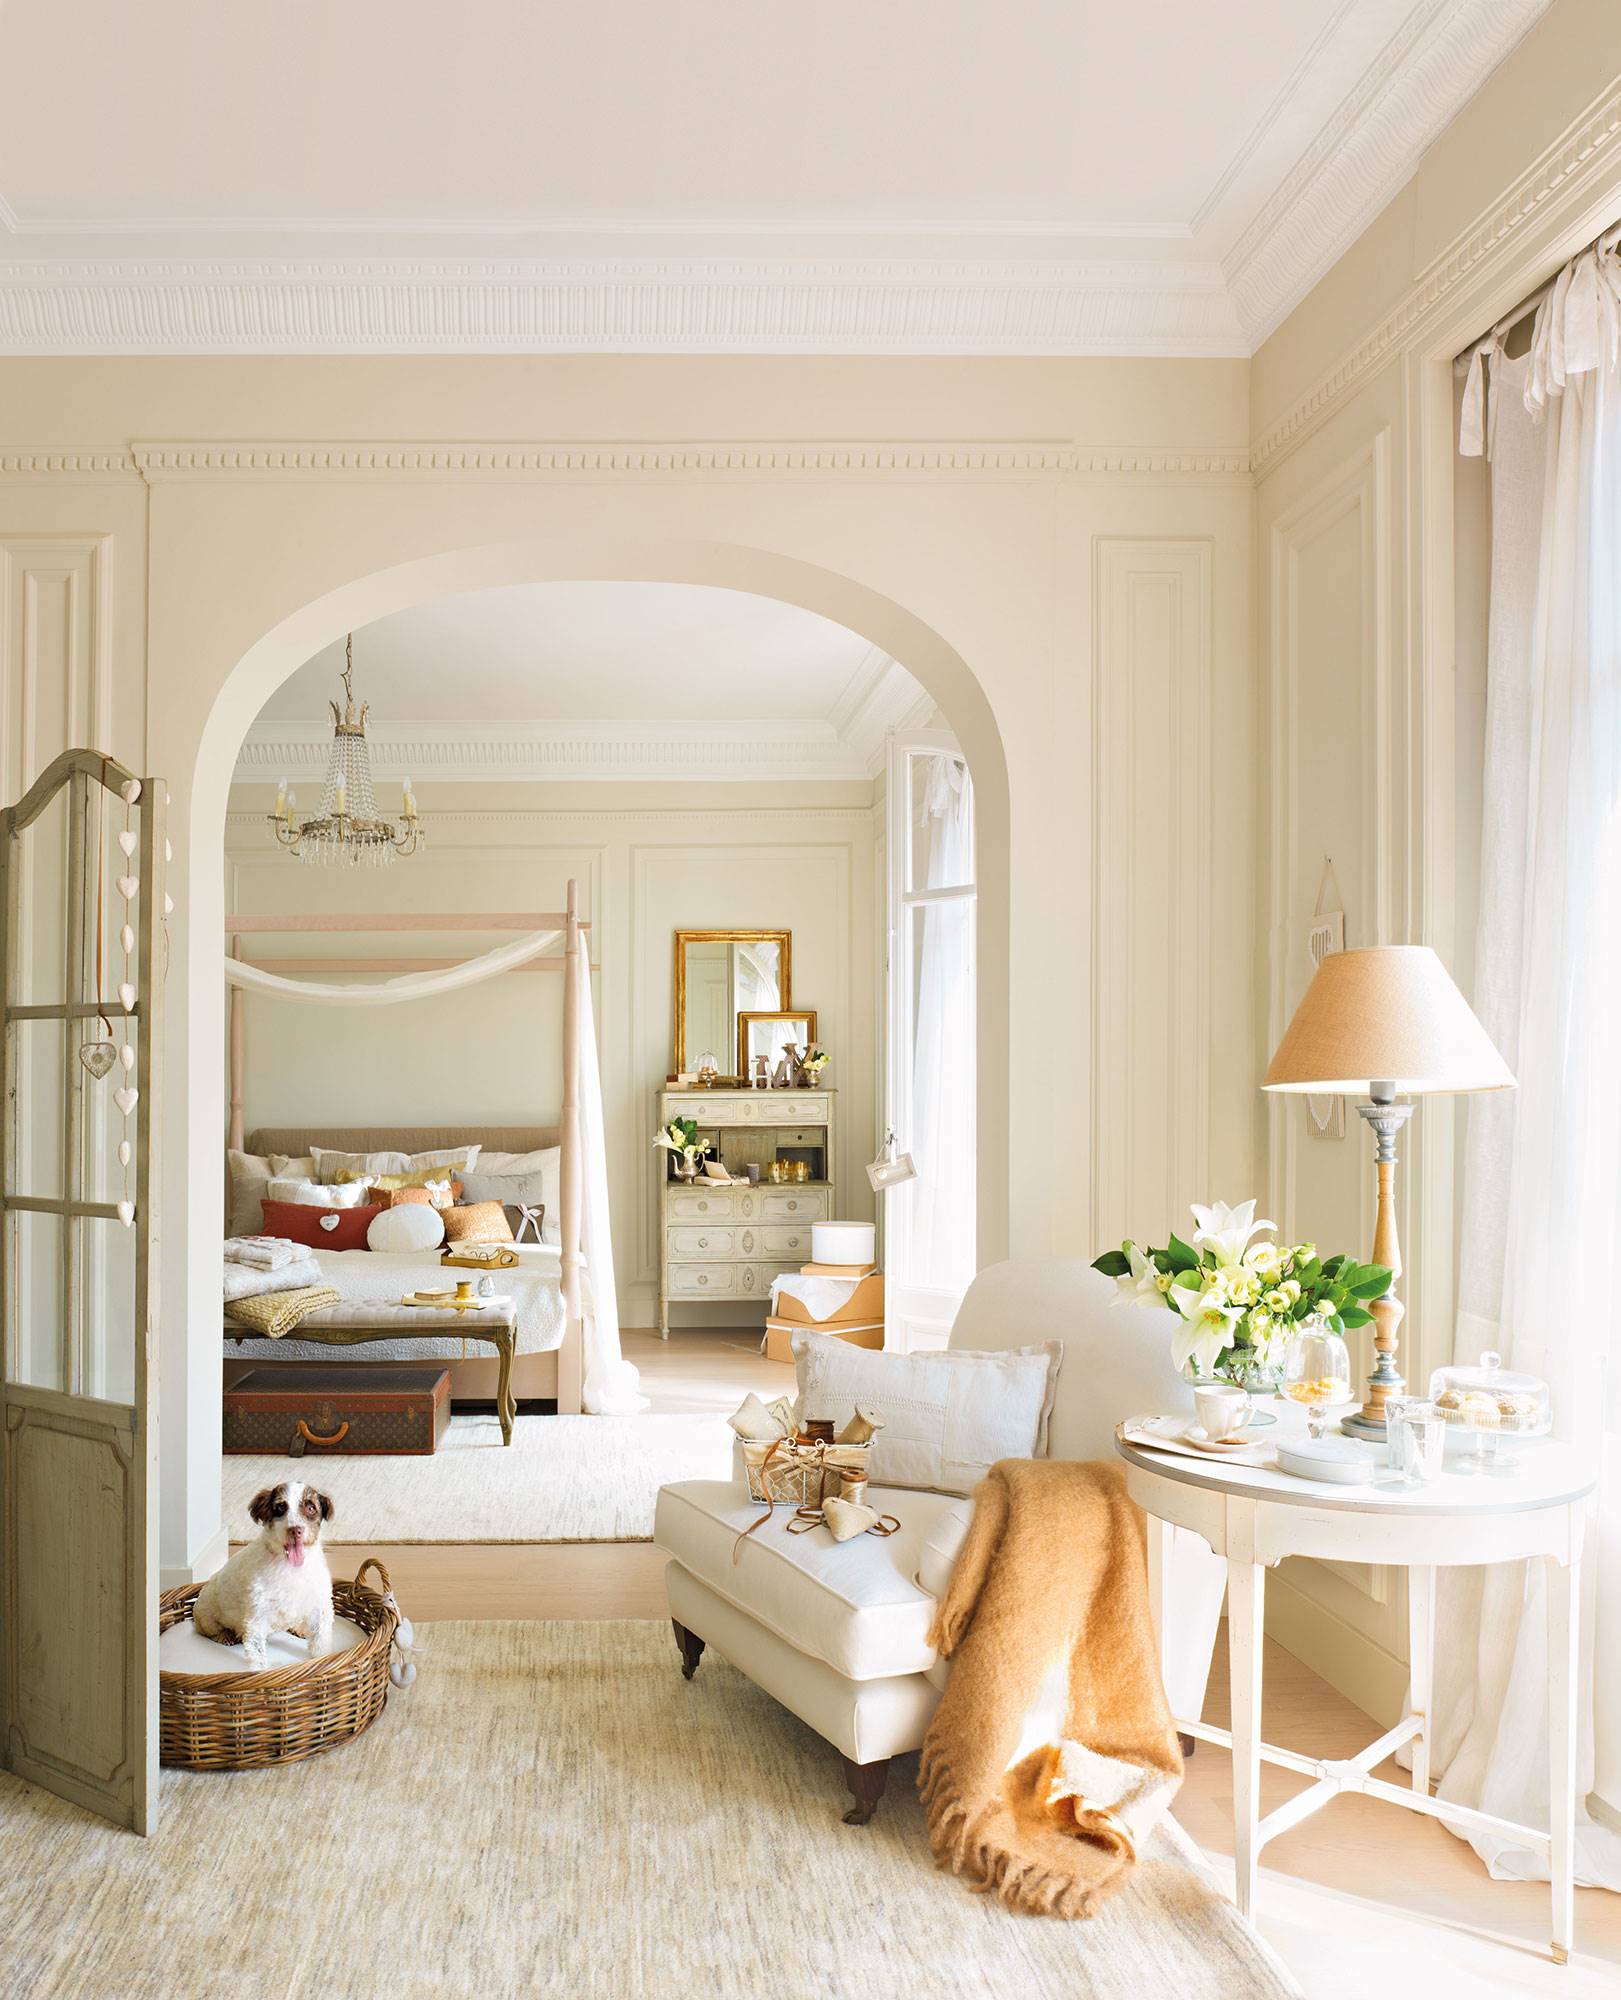 Dormitorio clásico en finca regia con cama con dosel al fondo y rincón de lectura en primer plano